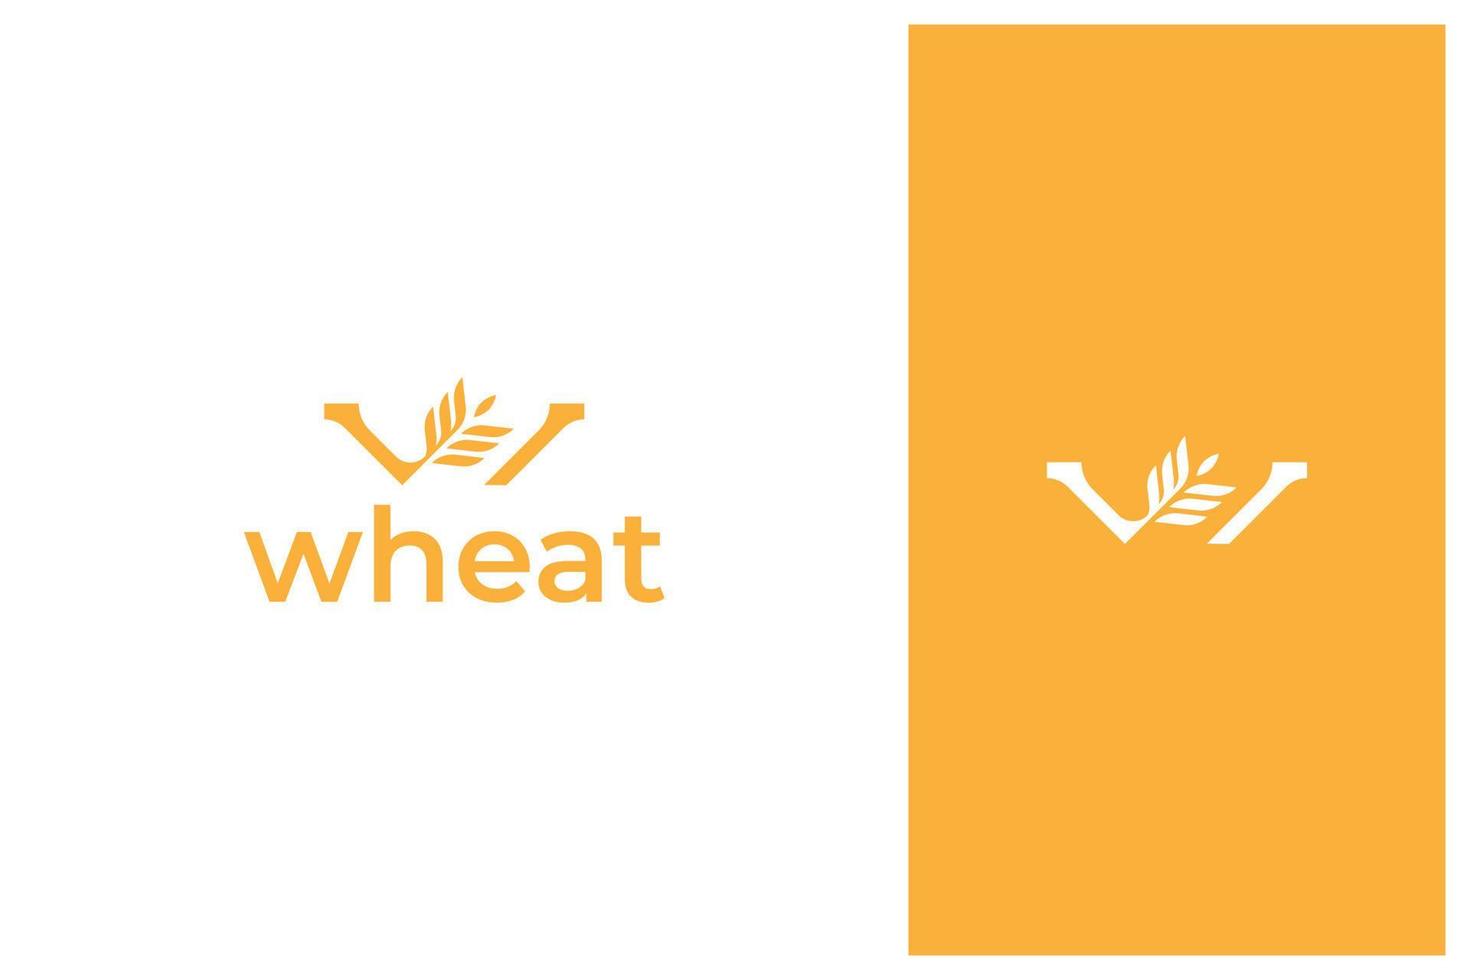 lettera w vettore di progettazione di logo di grano di grano